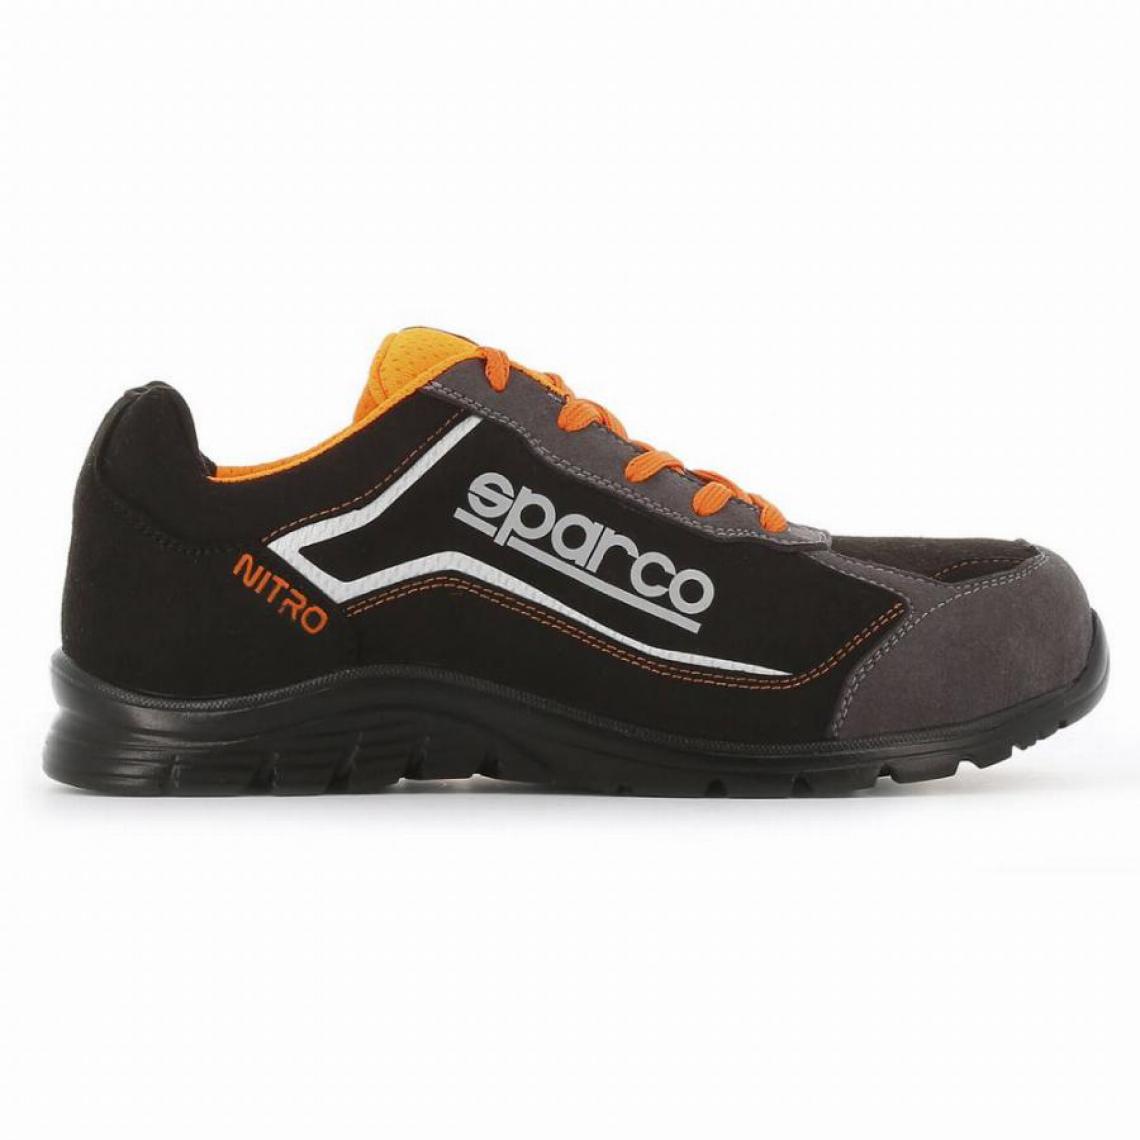 S 24 Bossi Industrie - Chaussure basse S3 Sparco Nitro S24 - orange et noir - taille 43 - NITRO 07522 NRGR - 43 - Equipement de Protection Individuelle